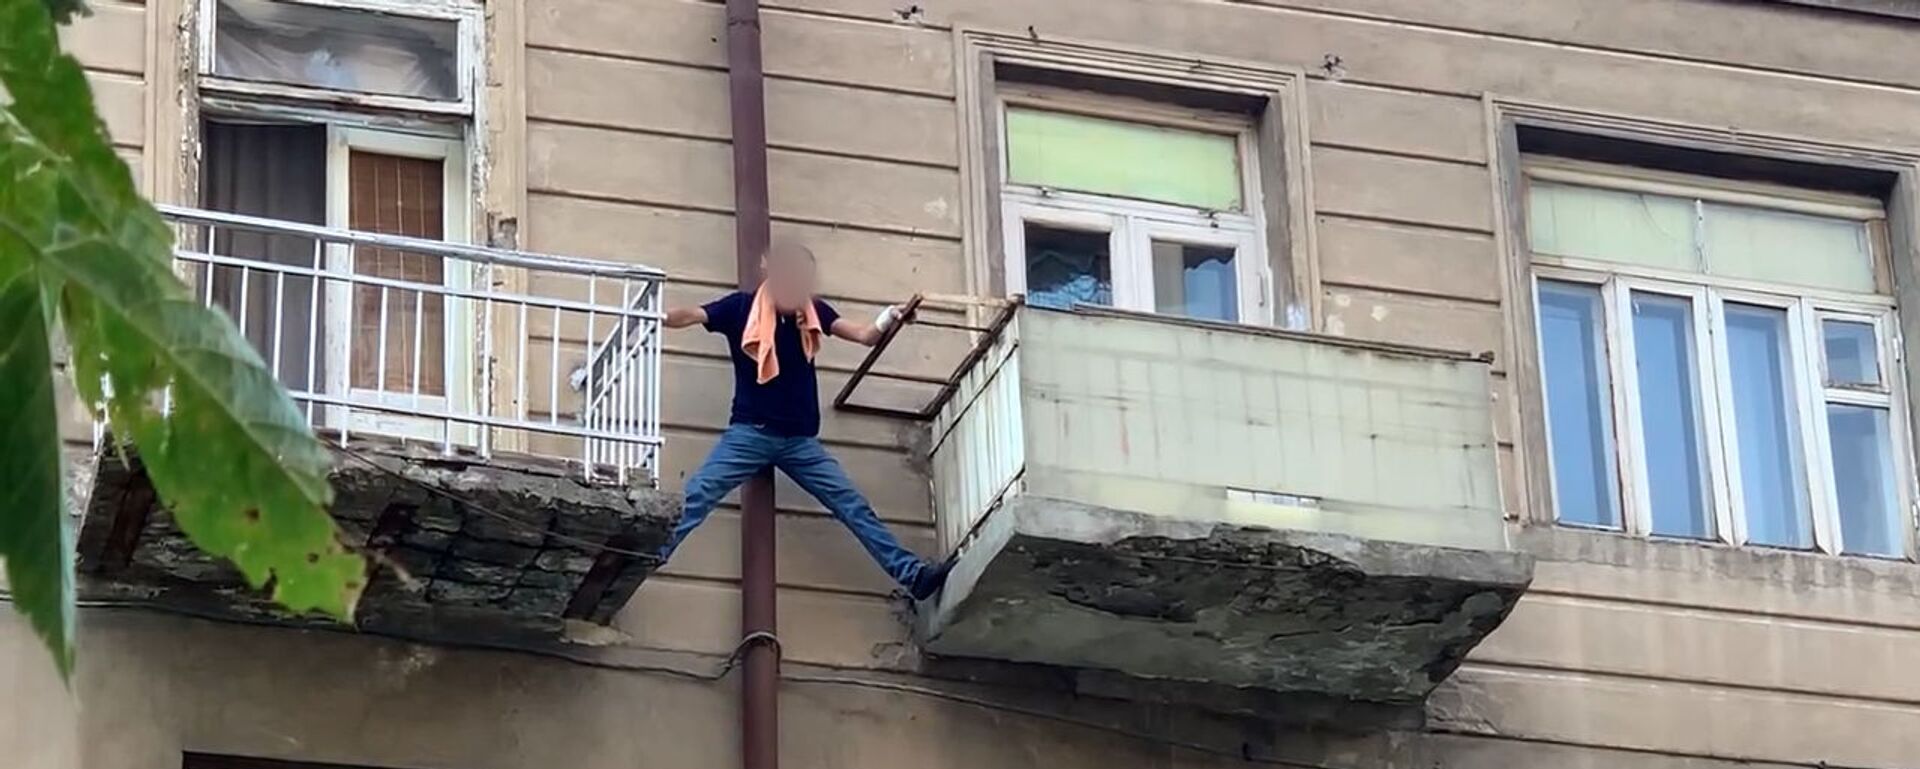 Ինքնասպանության փորձ Երևանում. տղամարդը սպառնում է ցած նետվել պատշգամբից - Sputnik Արմենիա, 1920, 03.09.2021